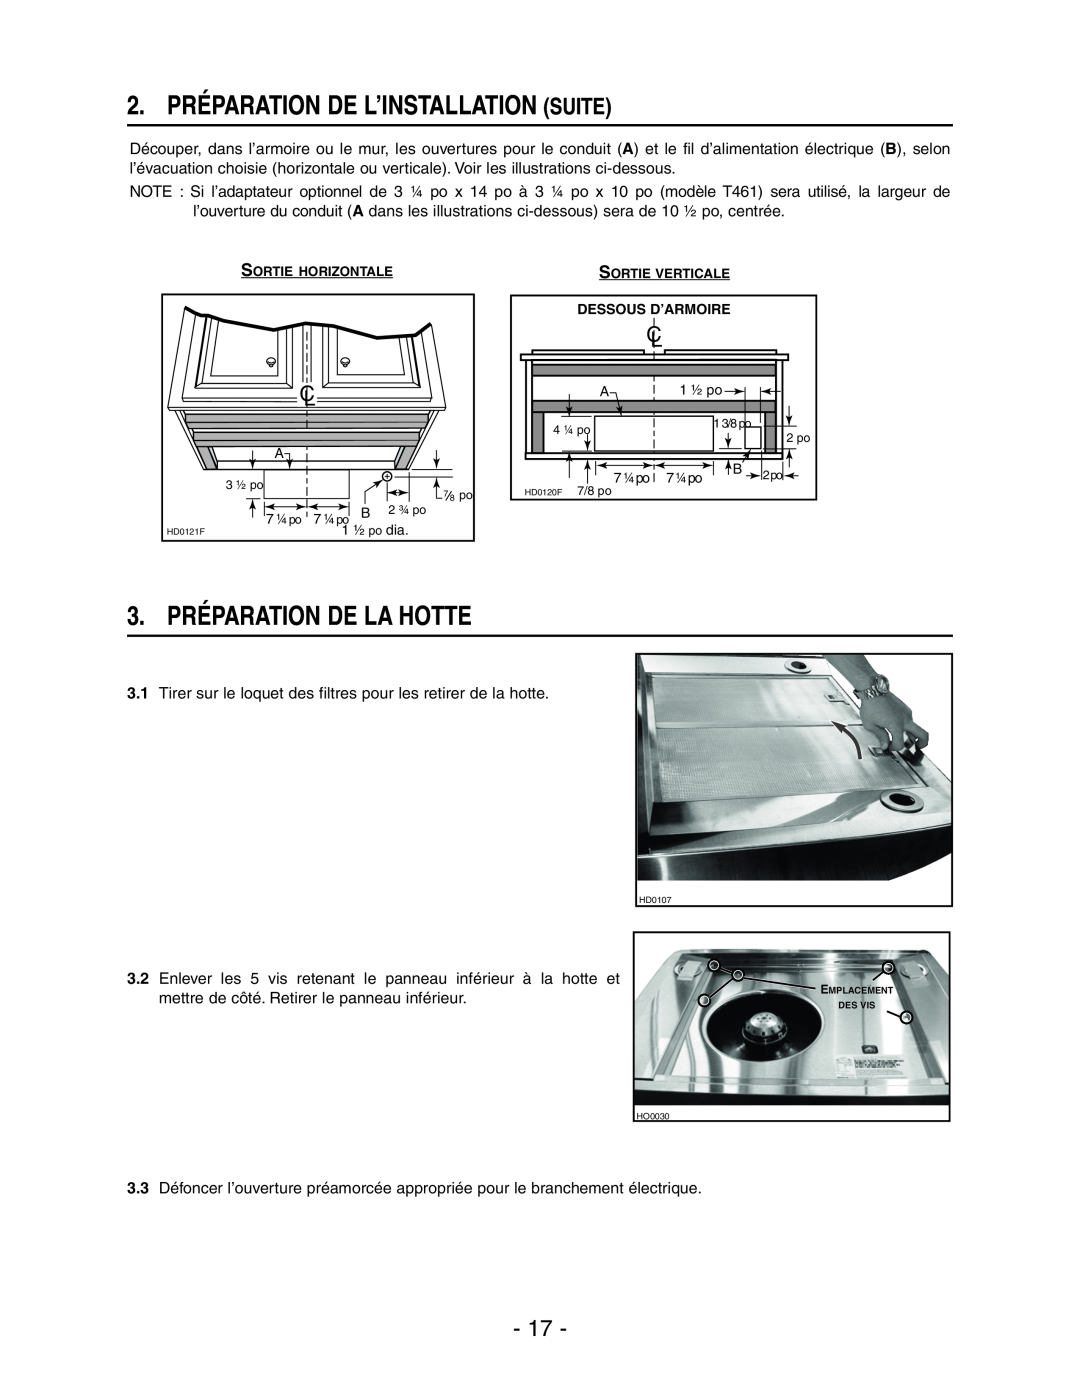 Broan E661 manual 2. PRÉPARATION DE L’INSTALLATION SUITE, 3. PRÉPARATION DE LA HOTTE 